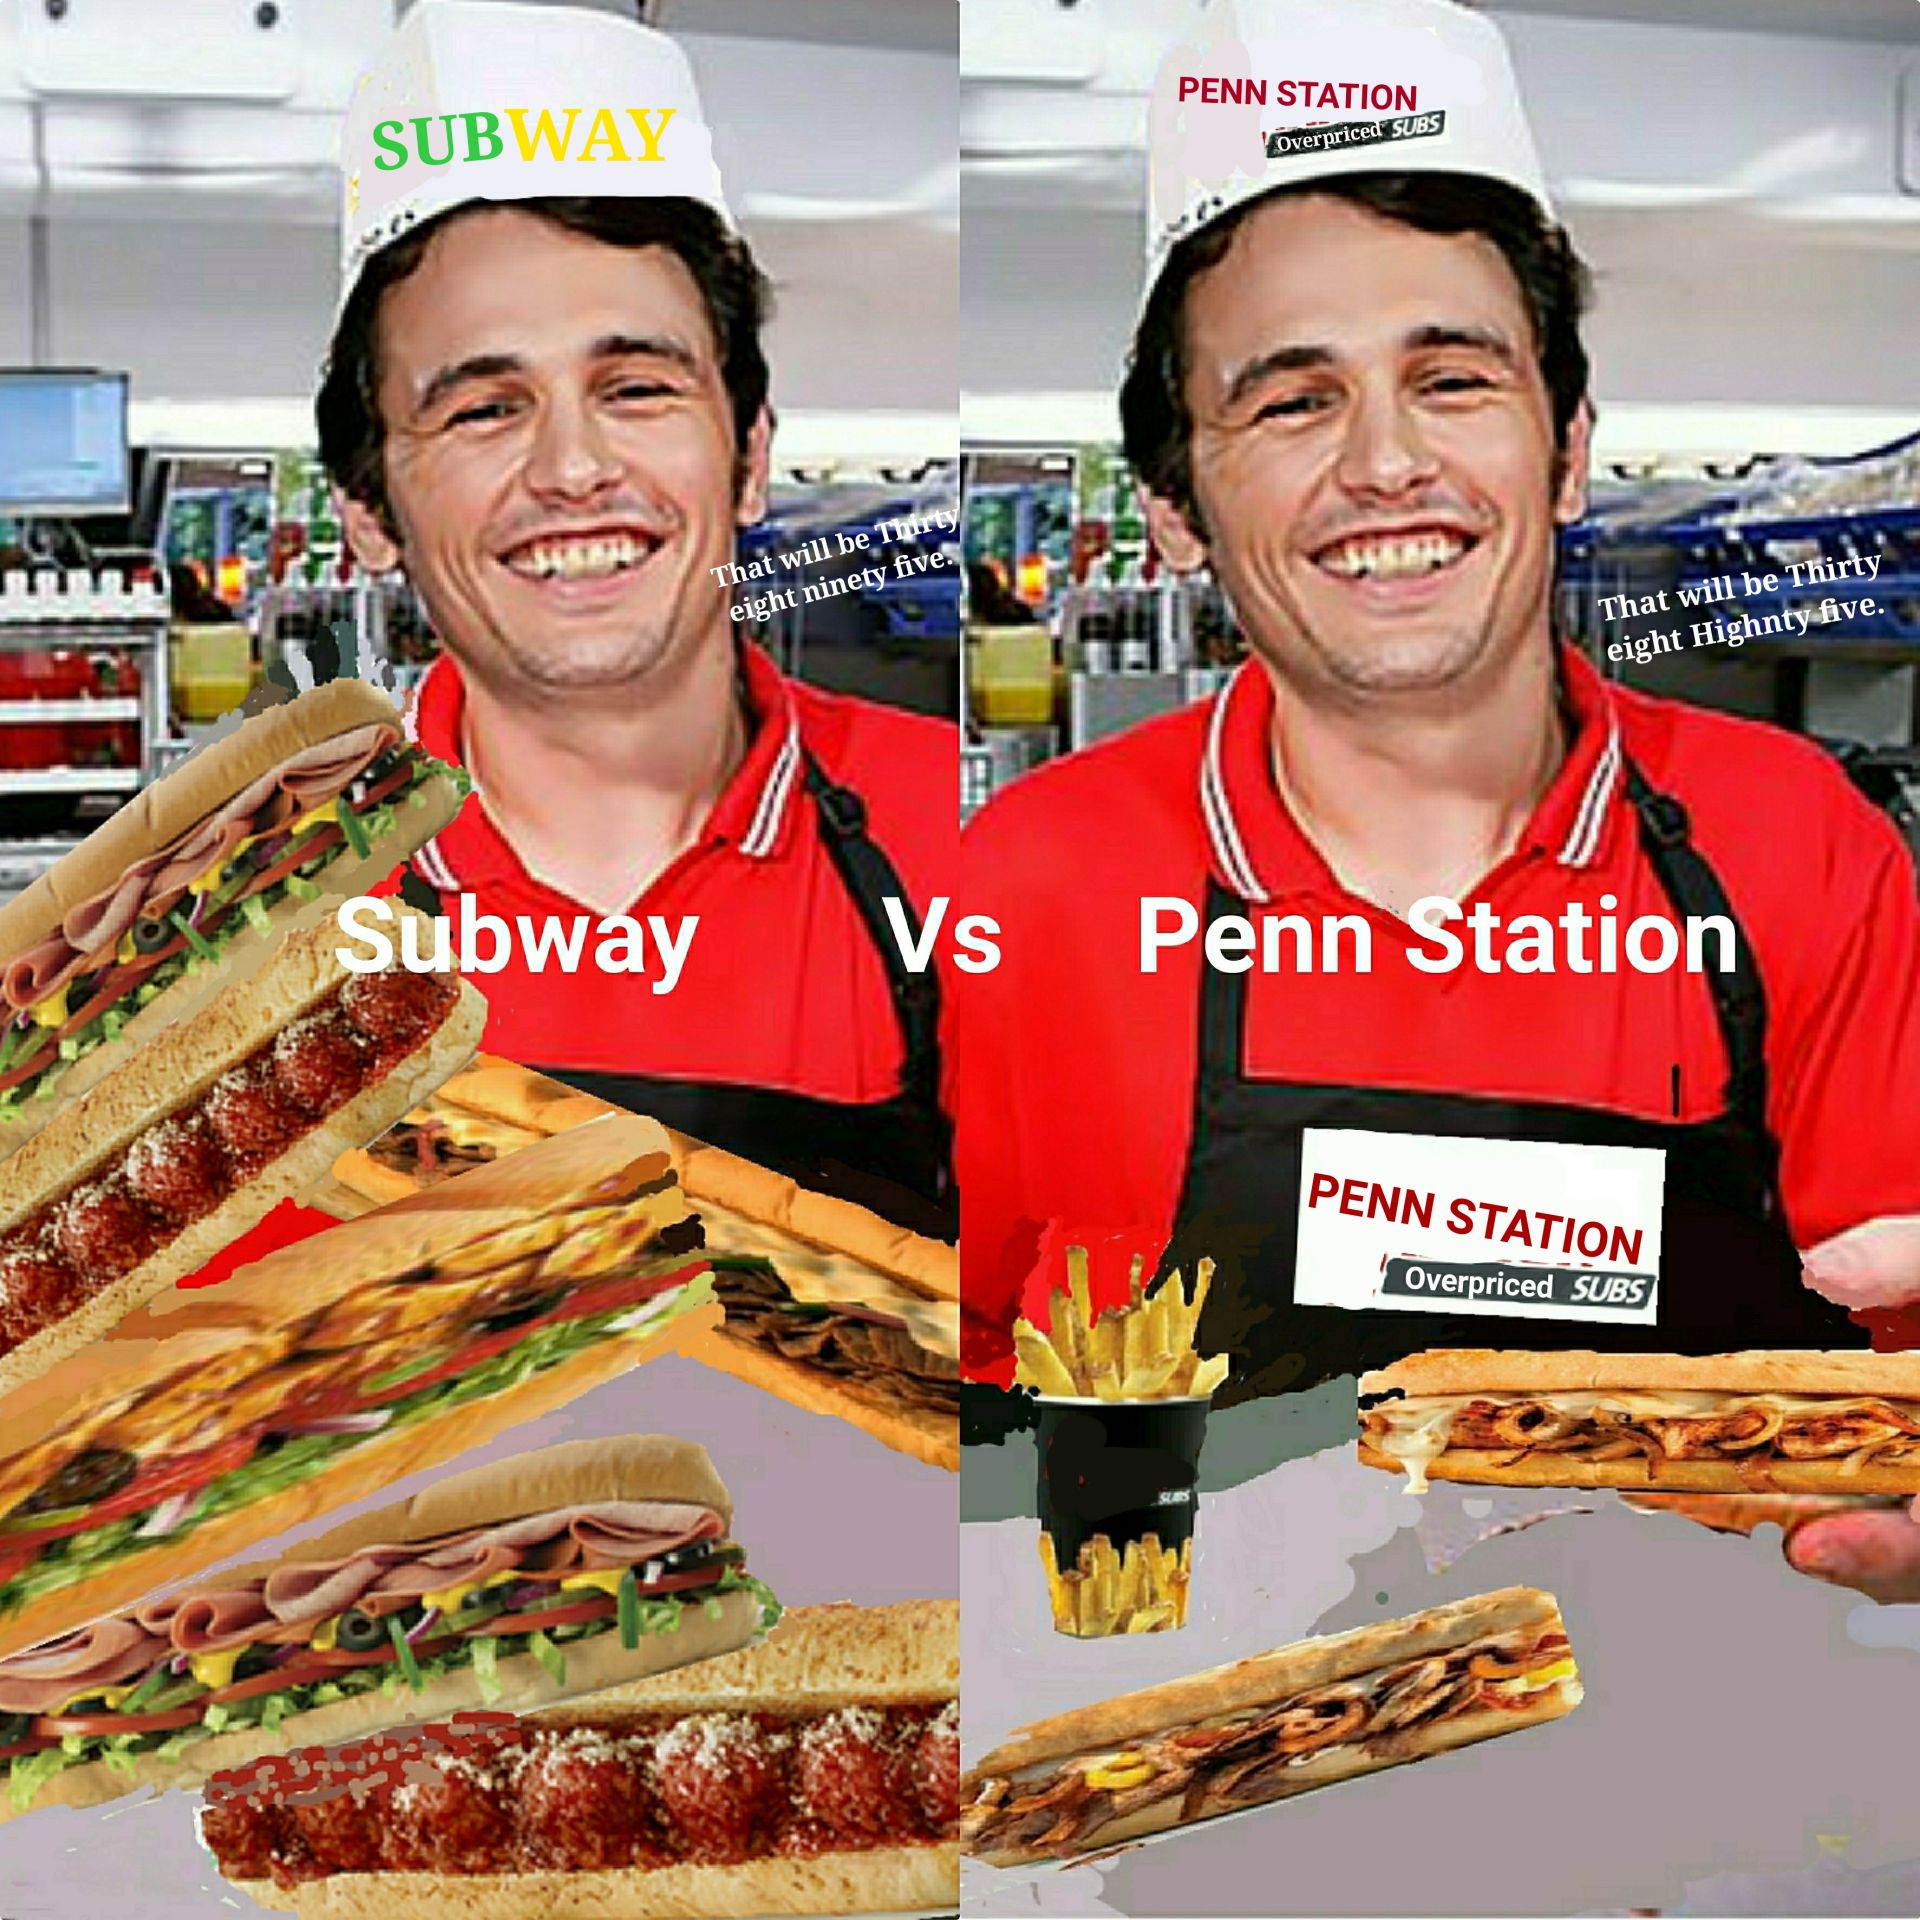 Subway VS Penn Station Blank Meme Template